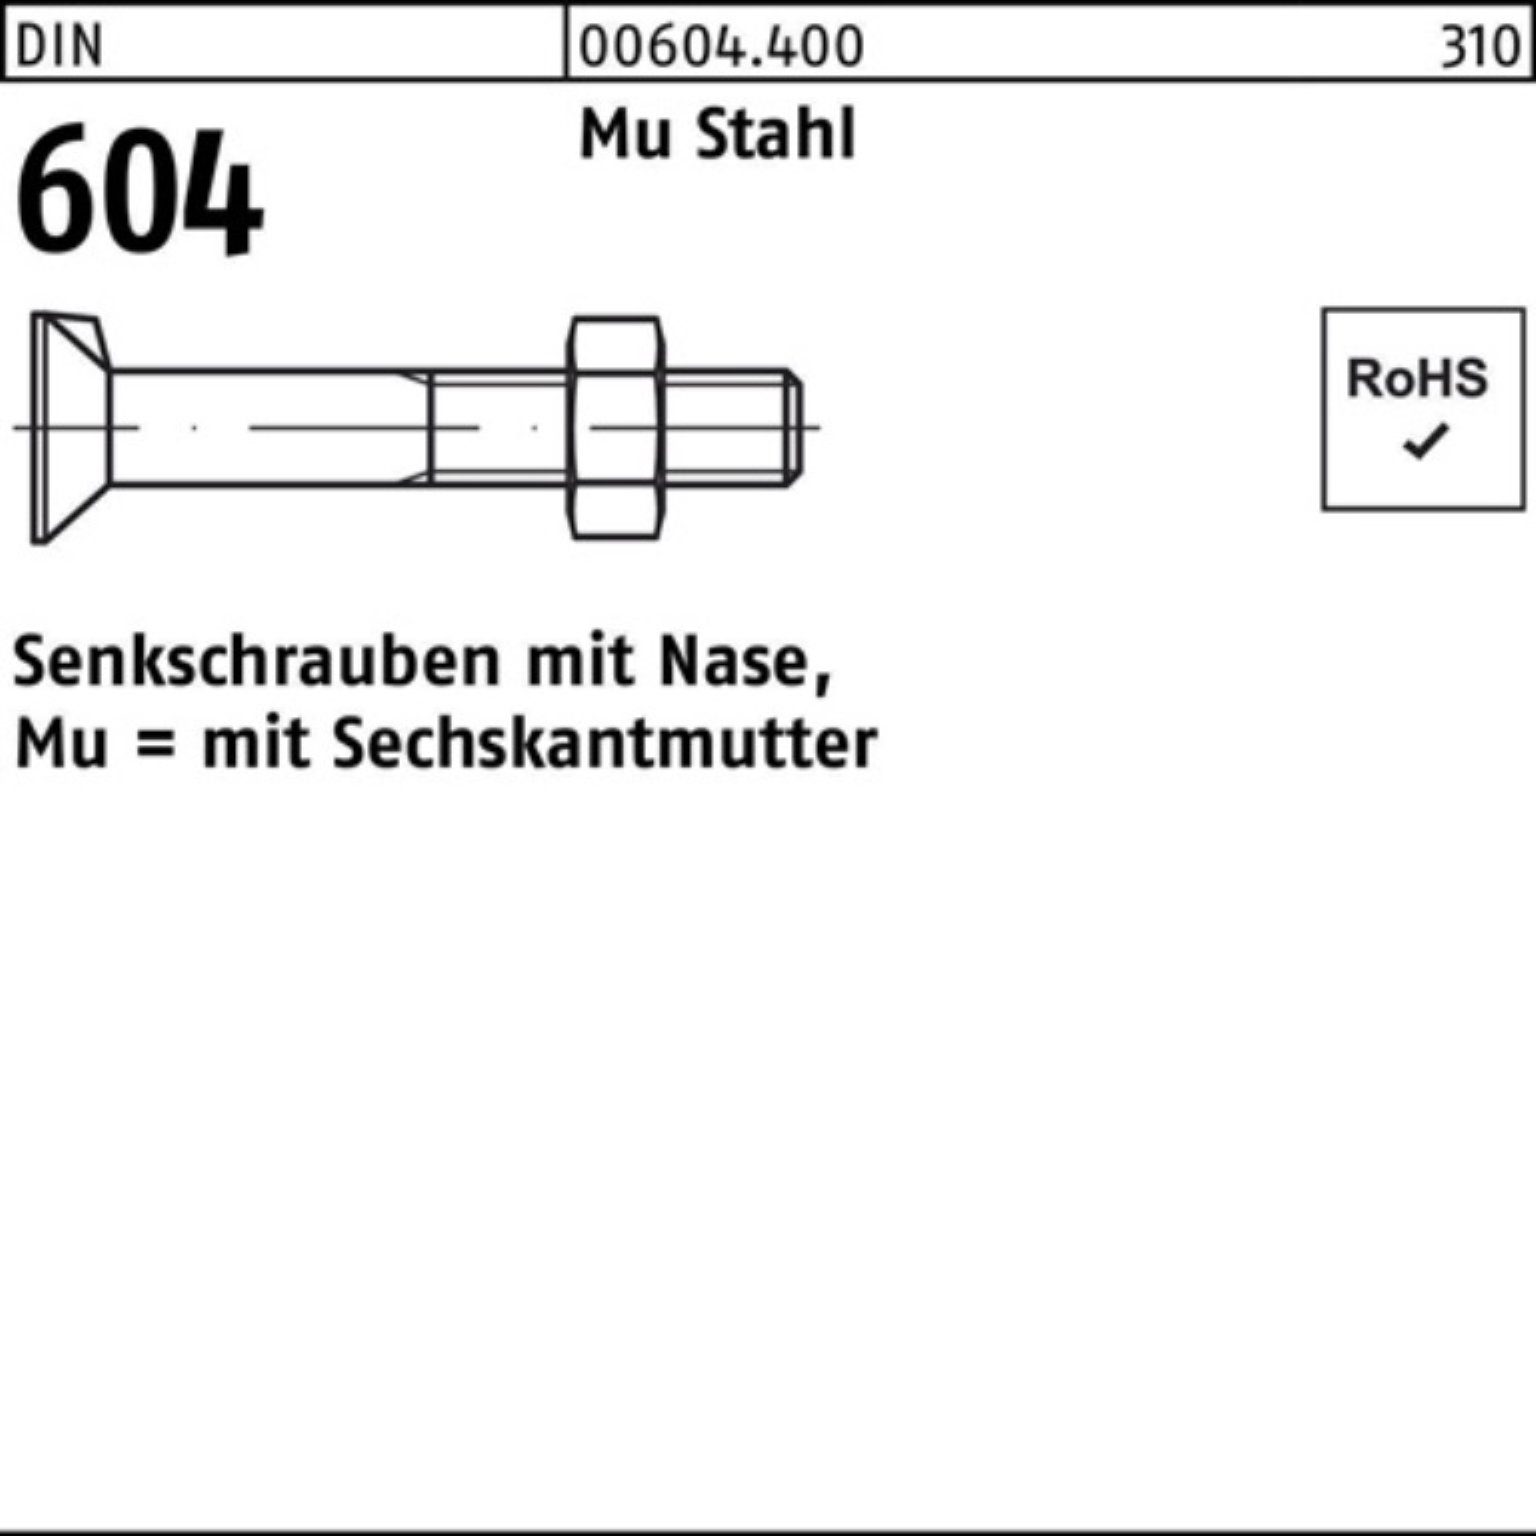 Reyher Senkschraube 100er Pack Senkschraube DIN 604 Nase/6-ktmutter M24x 100 Mu Stahl 4.6